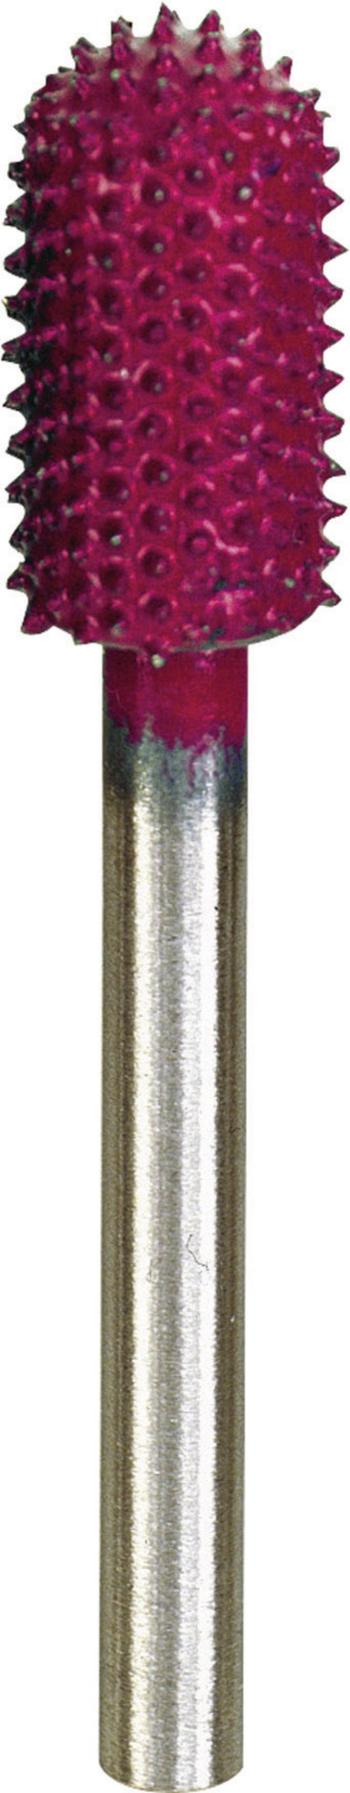 Proxxon Micromot 29 060 rašpľa fréza karbid wolframu   7.5 mm    Ø hriadeľa 3.2 mm